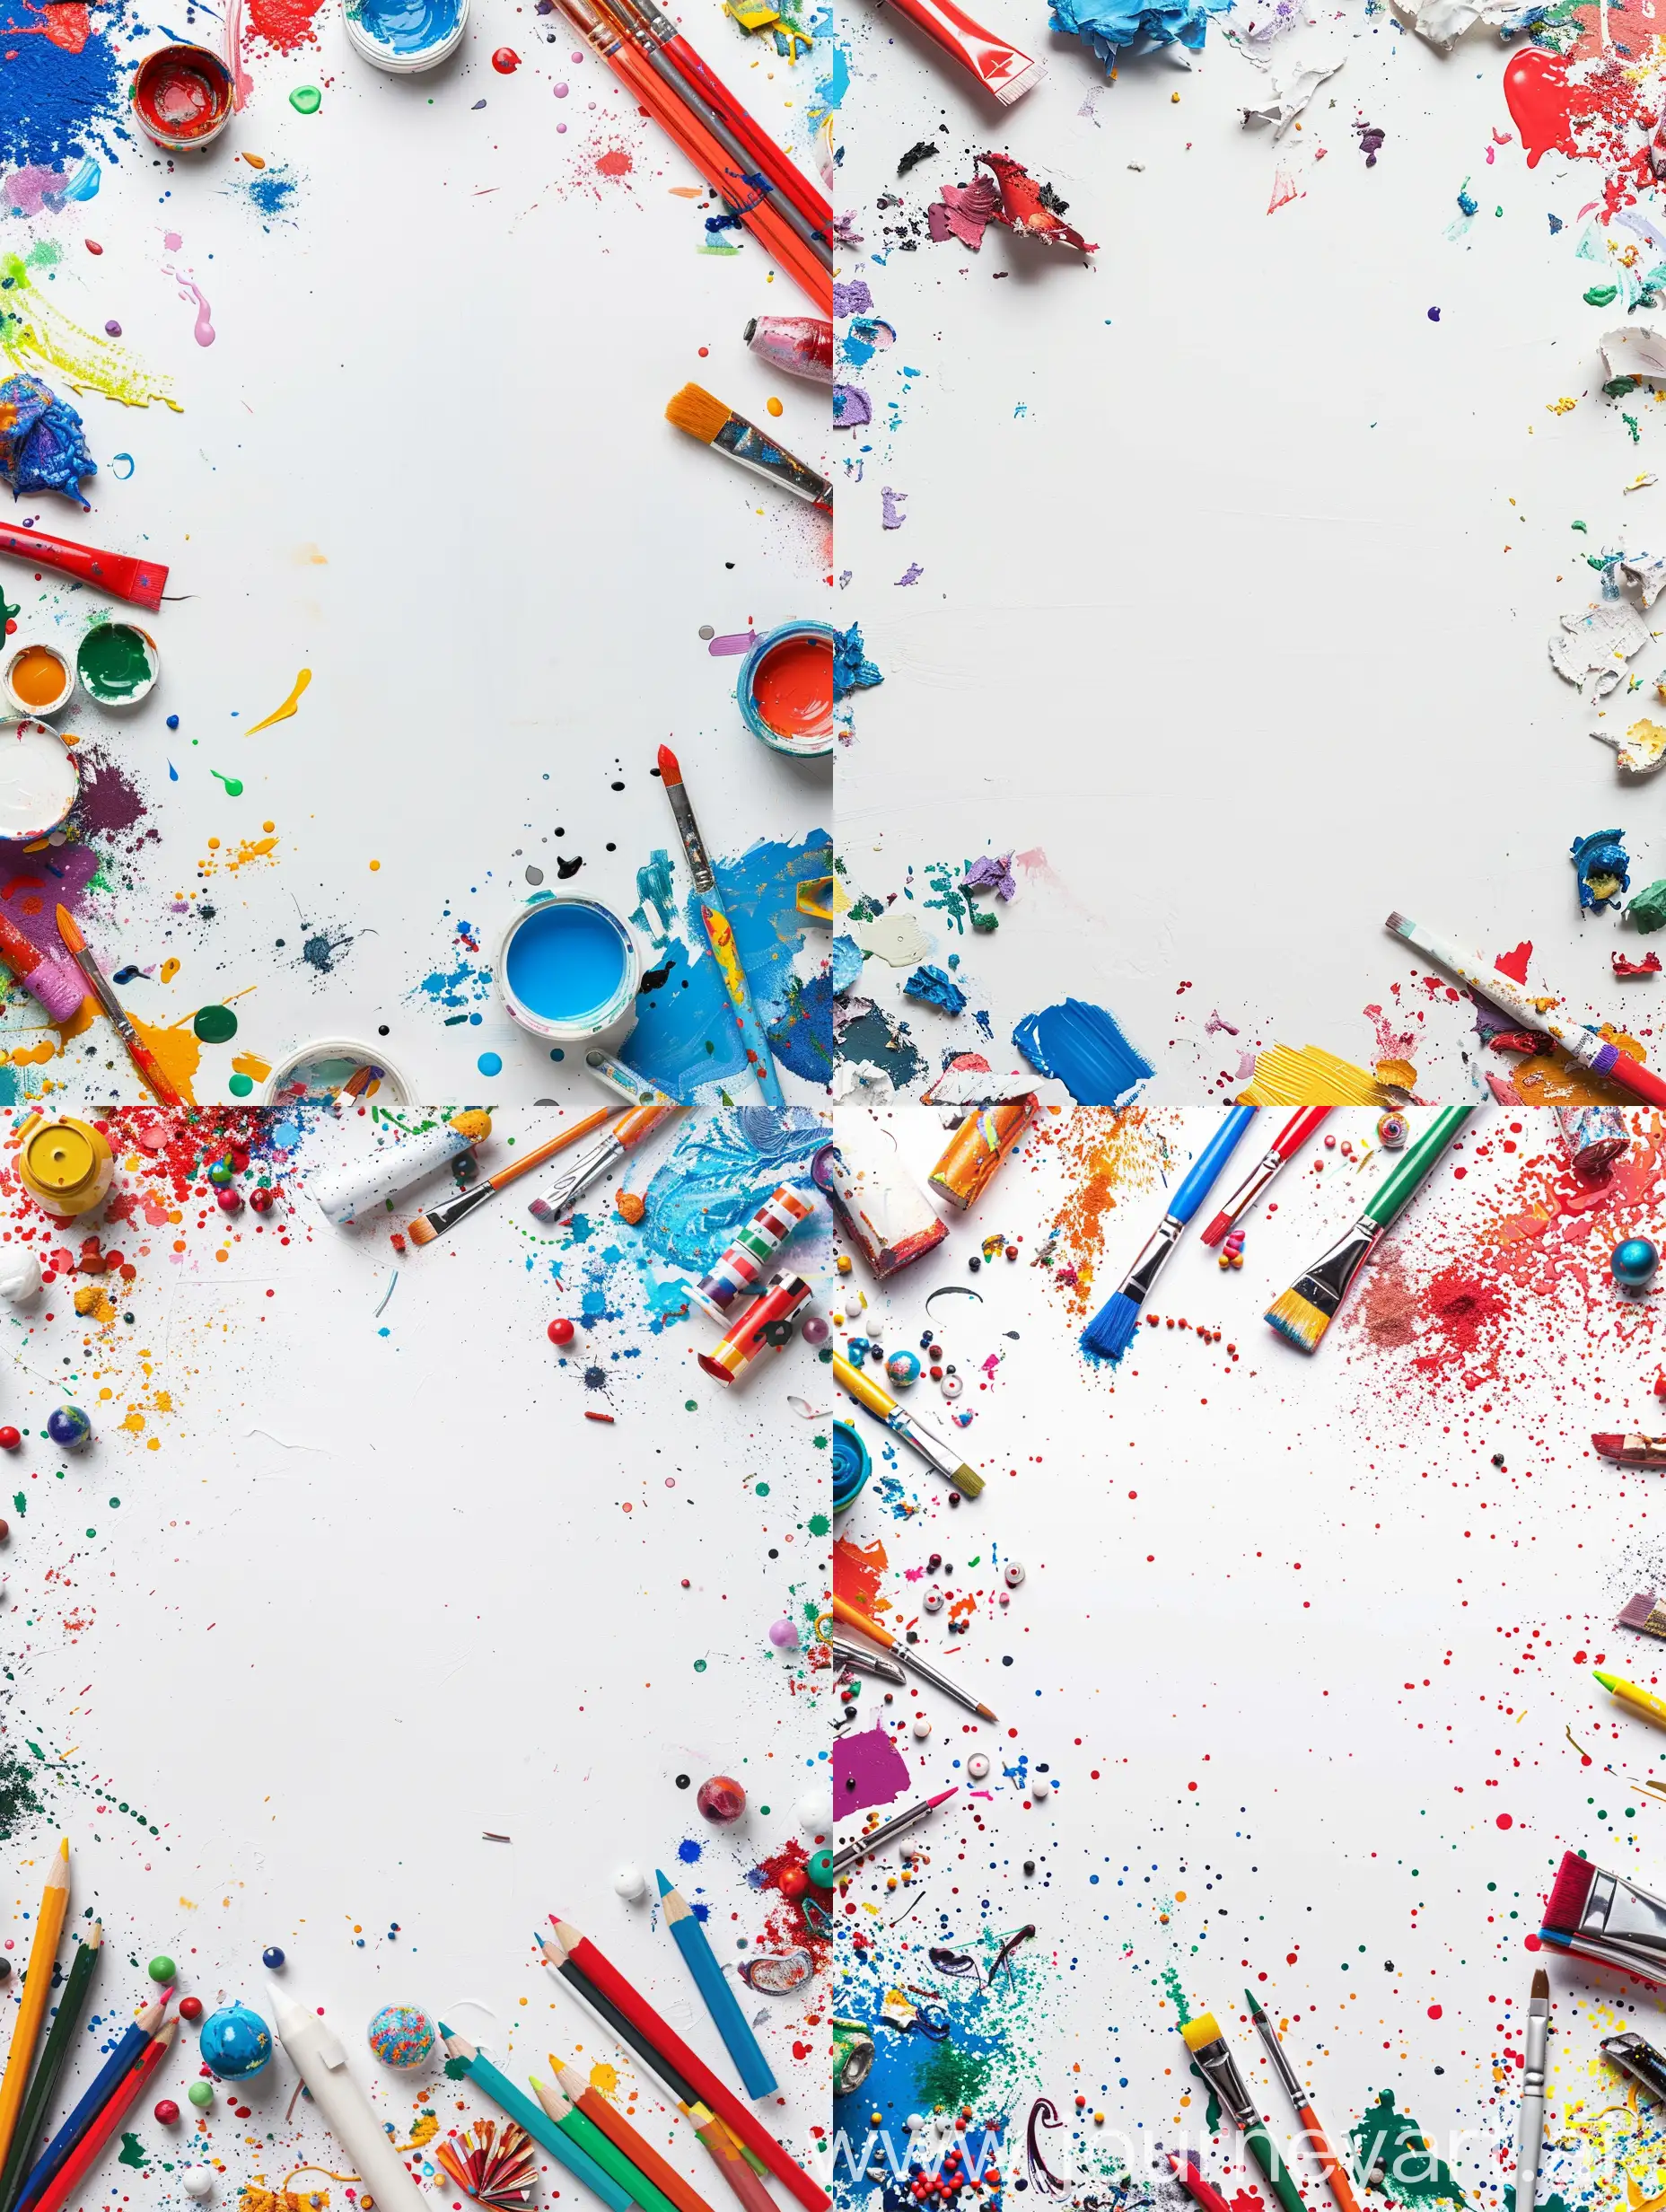 фоновое изображение для игры про смешивание цветов: фон белый по краям изображения разброшены художественные материалы, вид сверху